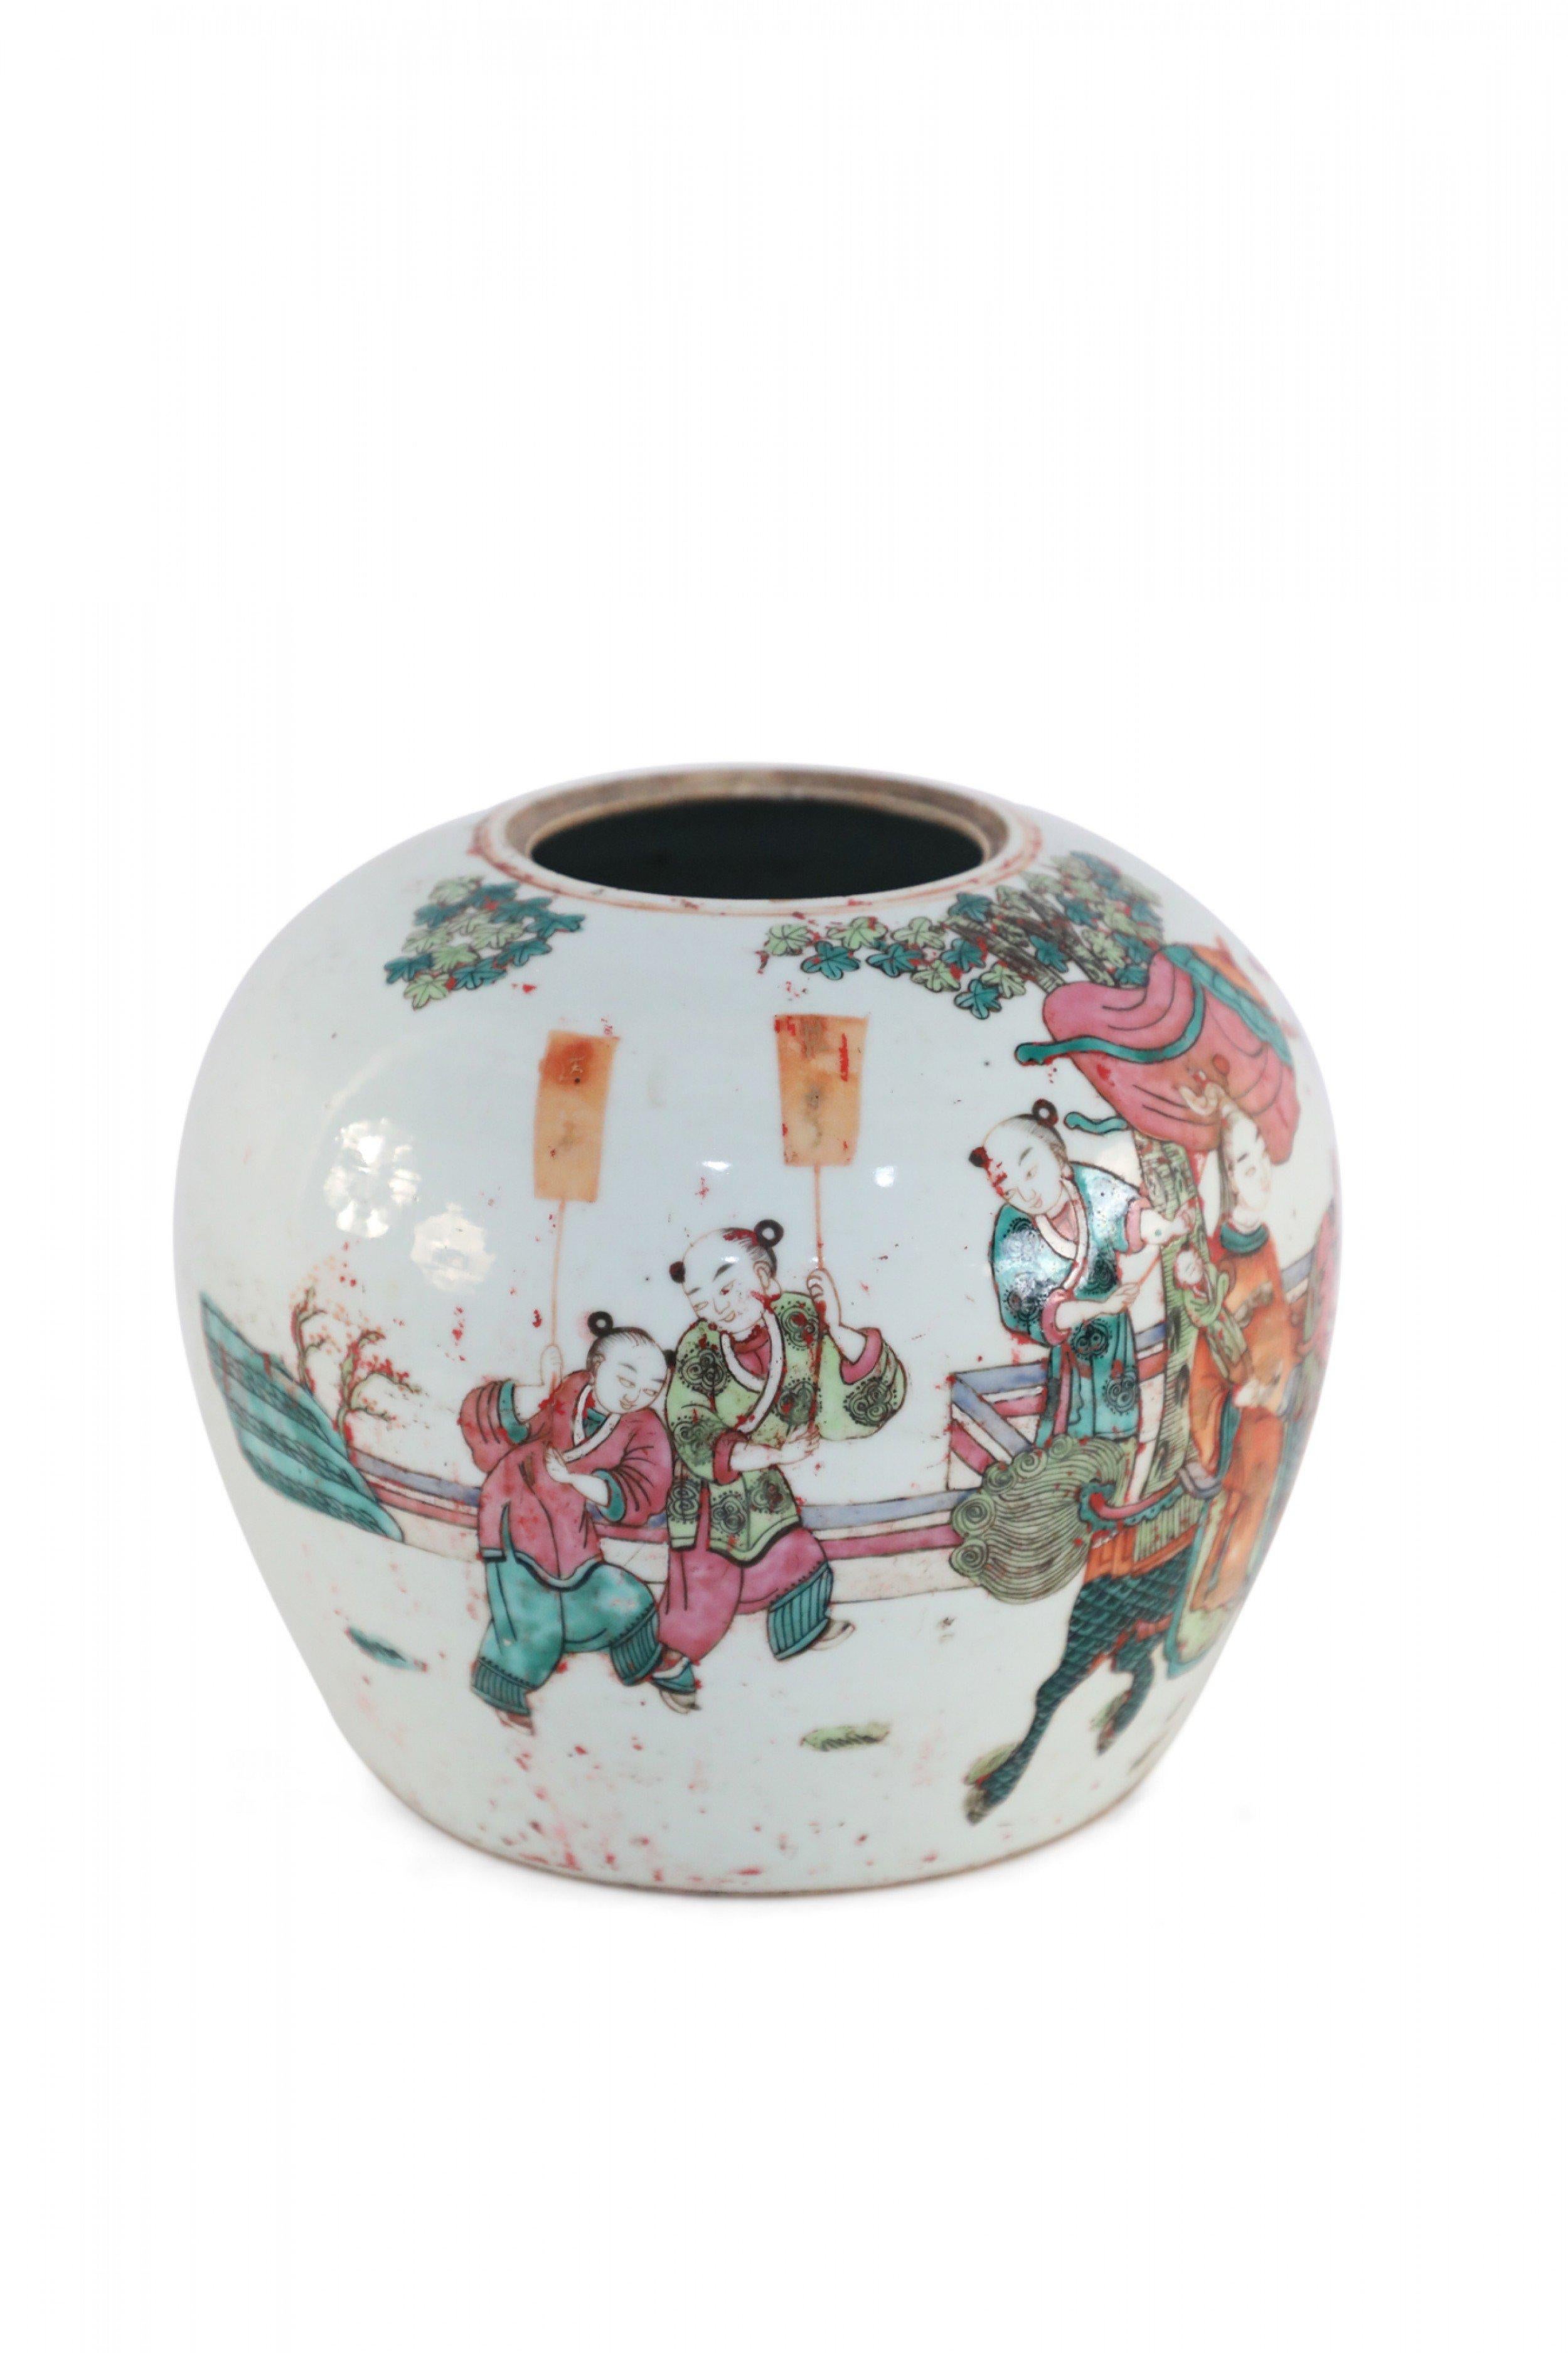 Ancien vase bas et arrondi en porcelaine blanche chinoise (début du 20e siècle), connu sous le nom de jarre à pastèque, représentant une procession animée de participants tenant des drapeaux et jouant du tambour, menant une femme chevauchant un